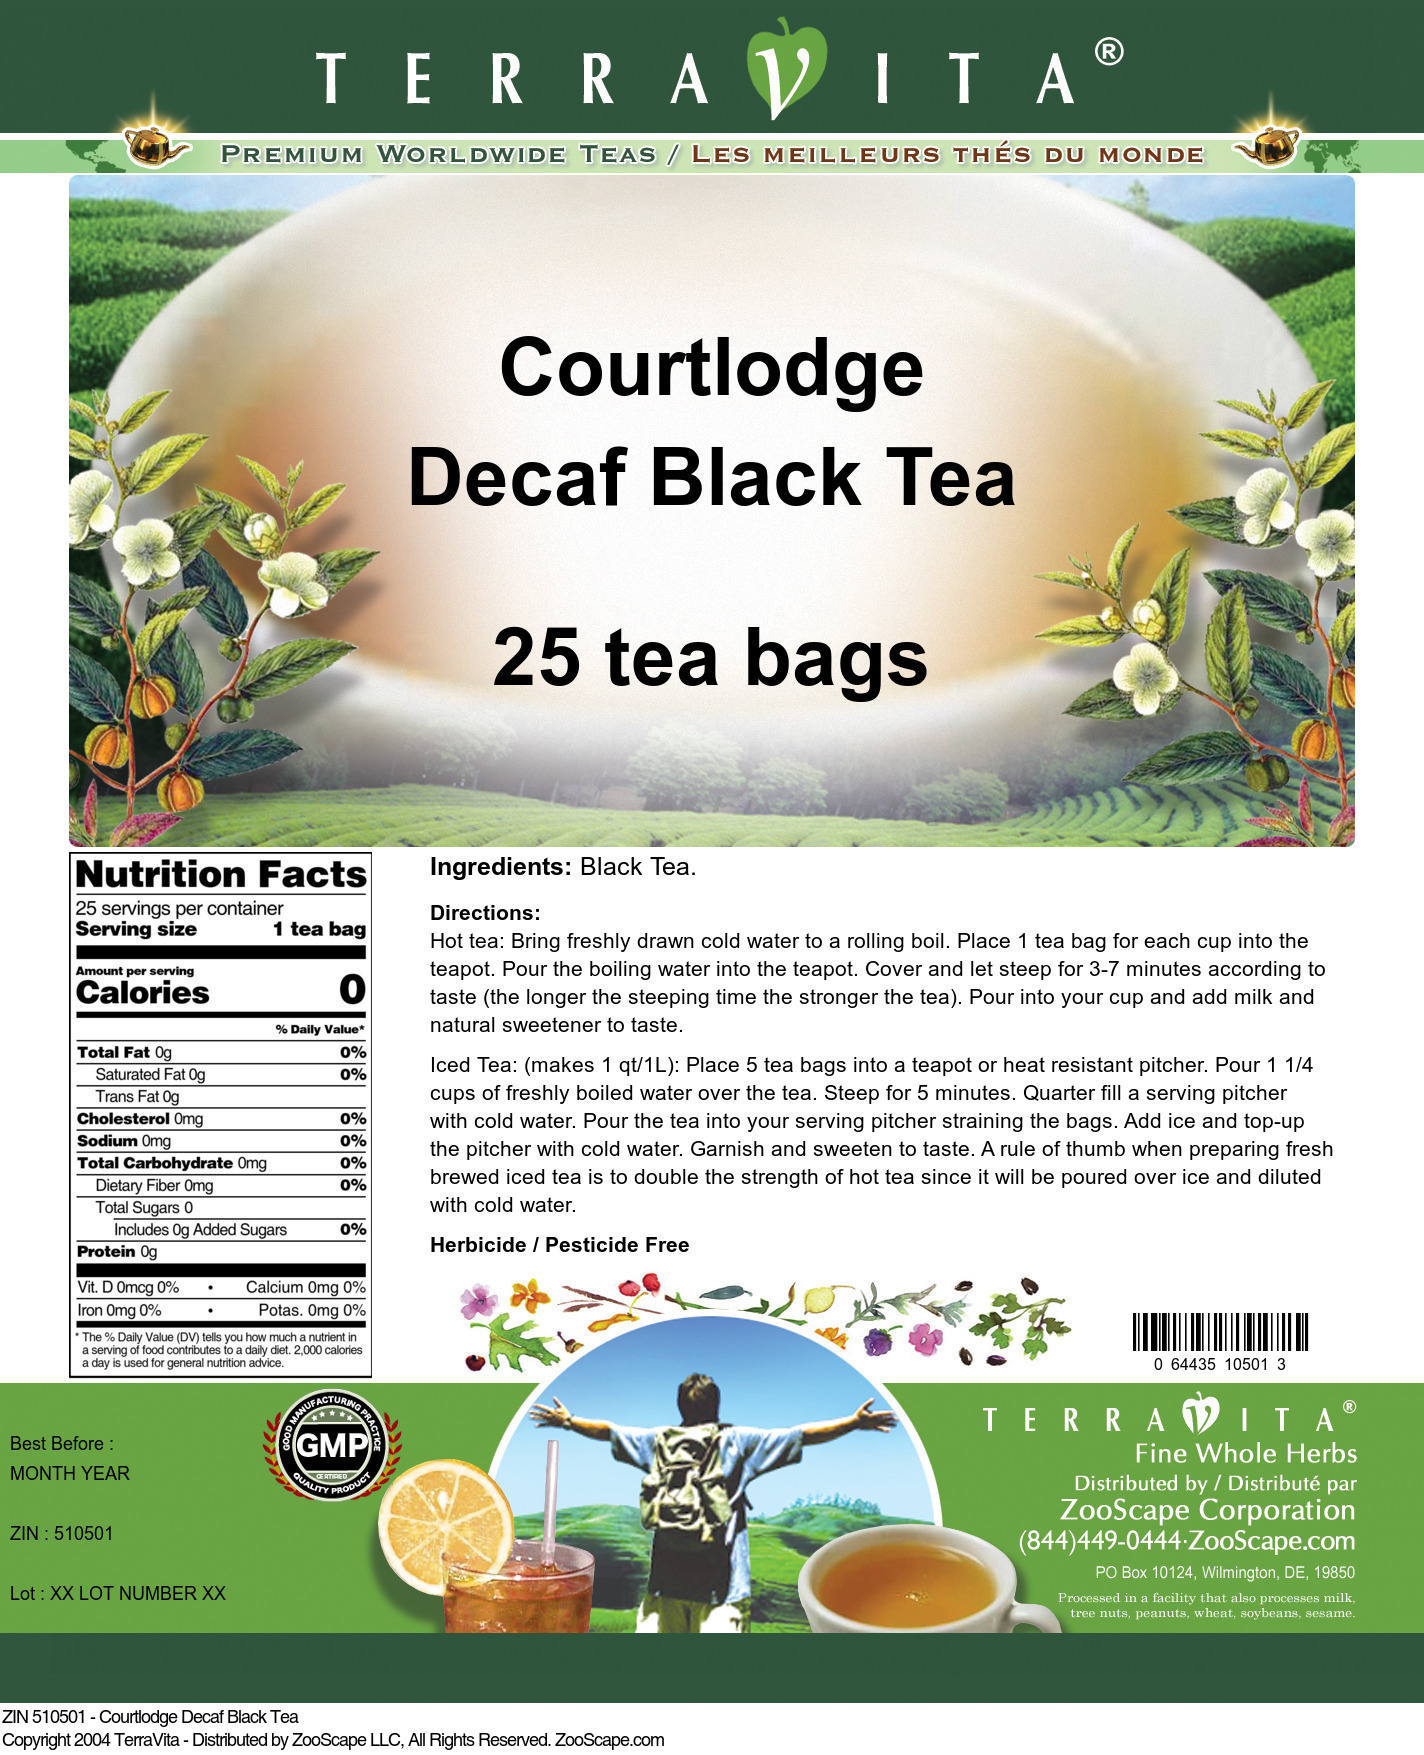 Courtlodge Decaf Black Tea - Label